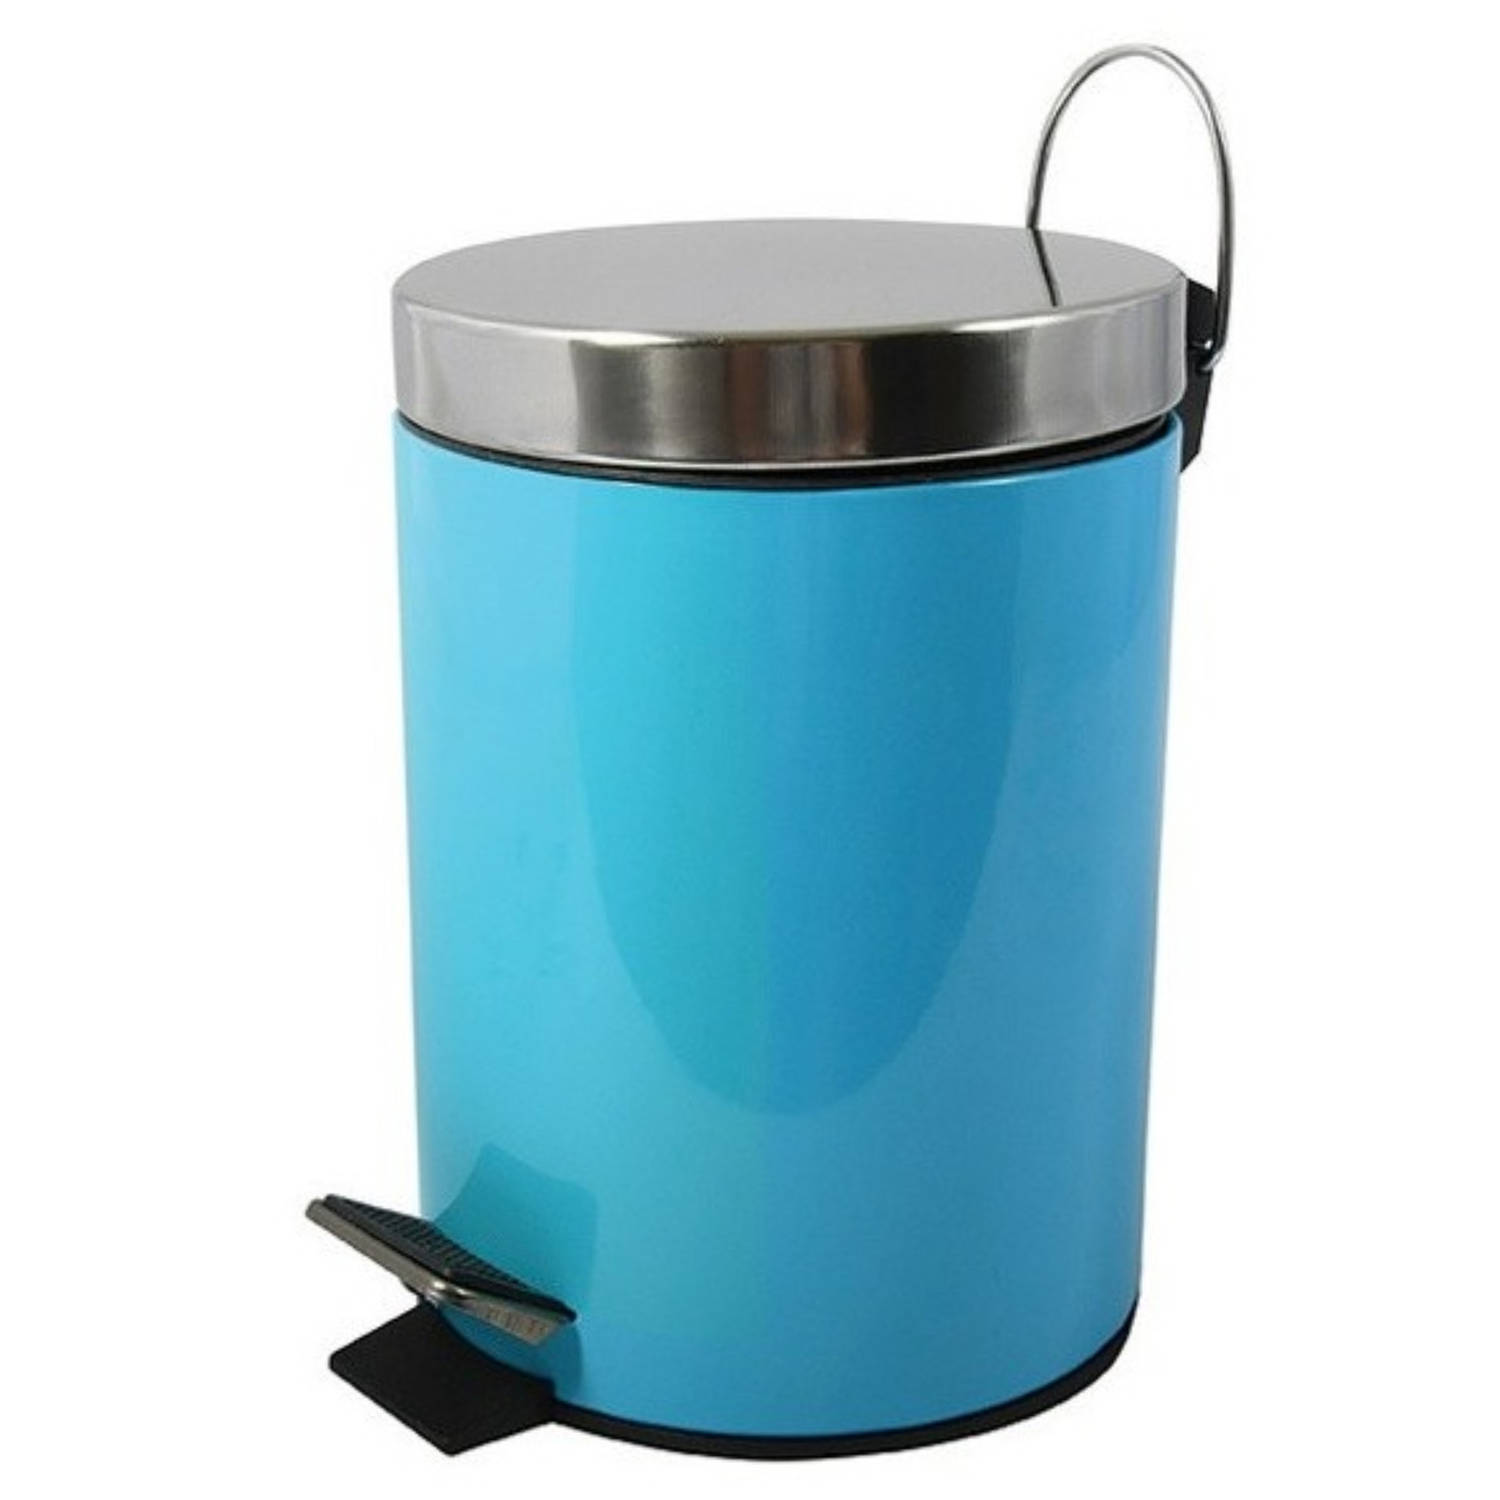 MSV Prullenbak/pedaalemmer - metaal - turquoise blauw - 3 liter - 17 x 25 cm - Badkamer/toilet